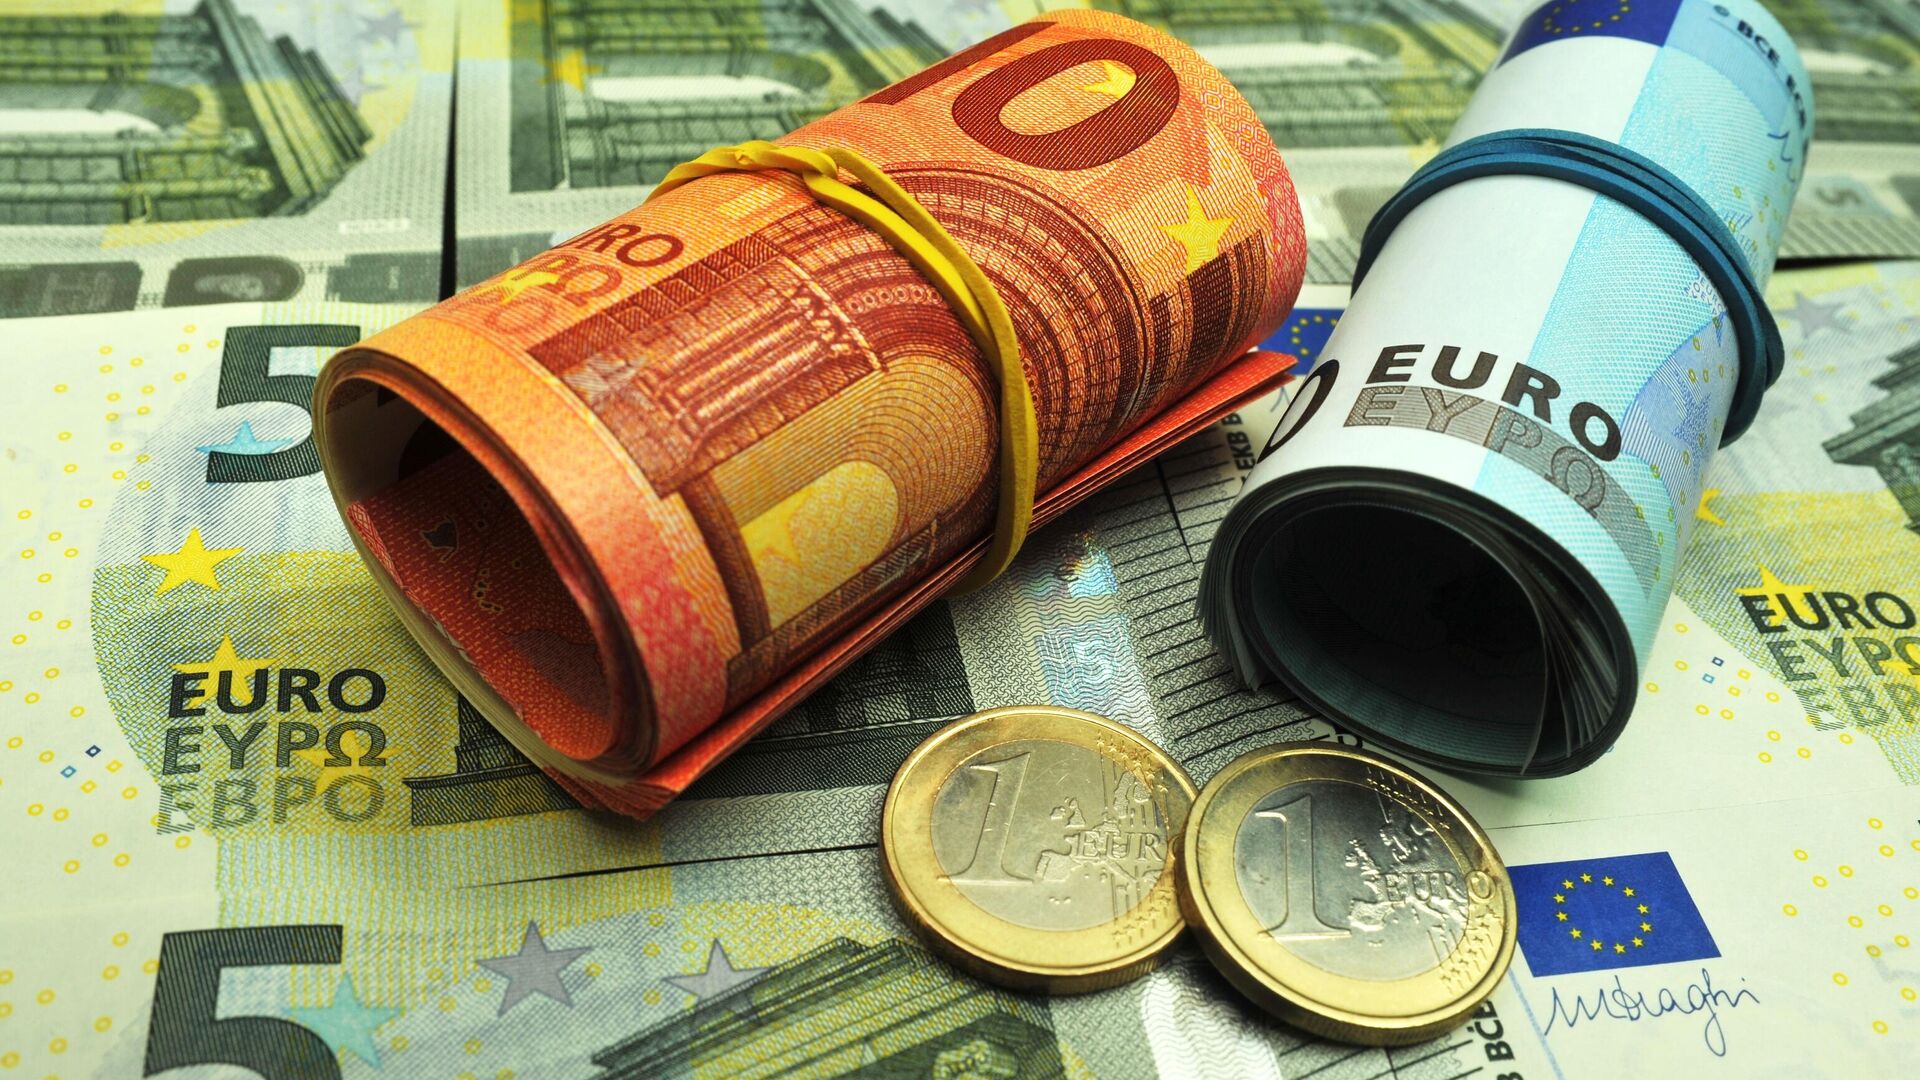 Официальный курс евро на выходные и праздники вырос до 90,79 рубля